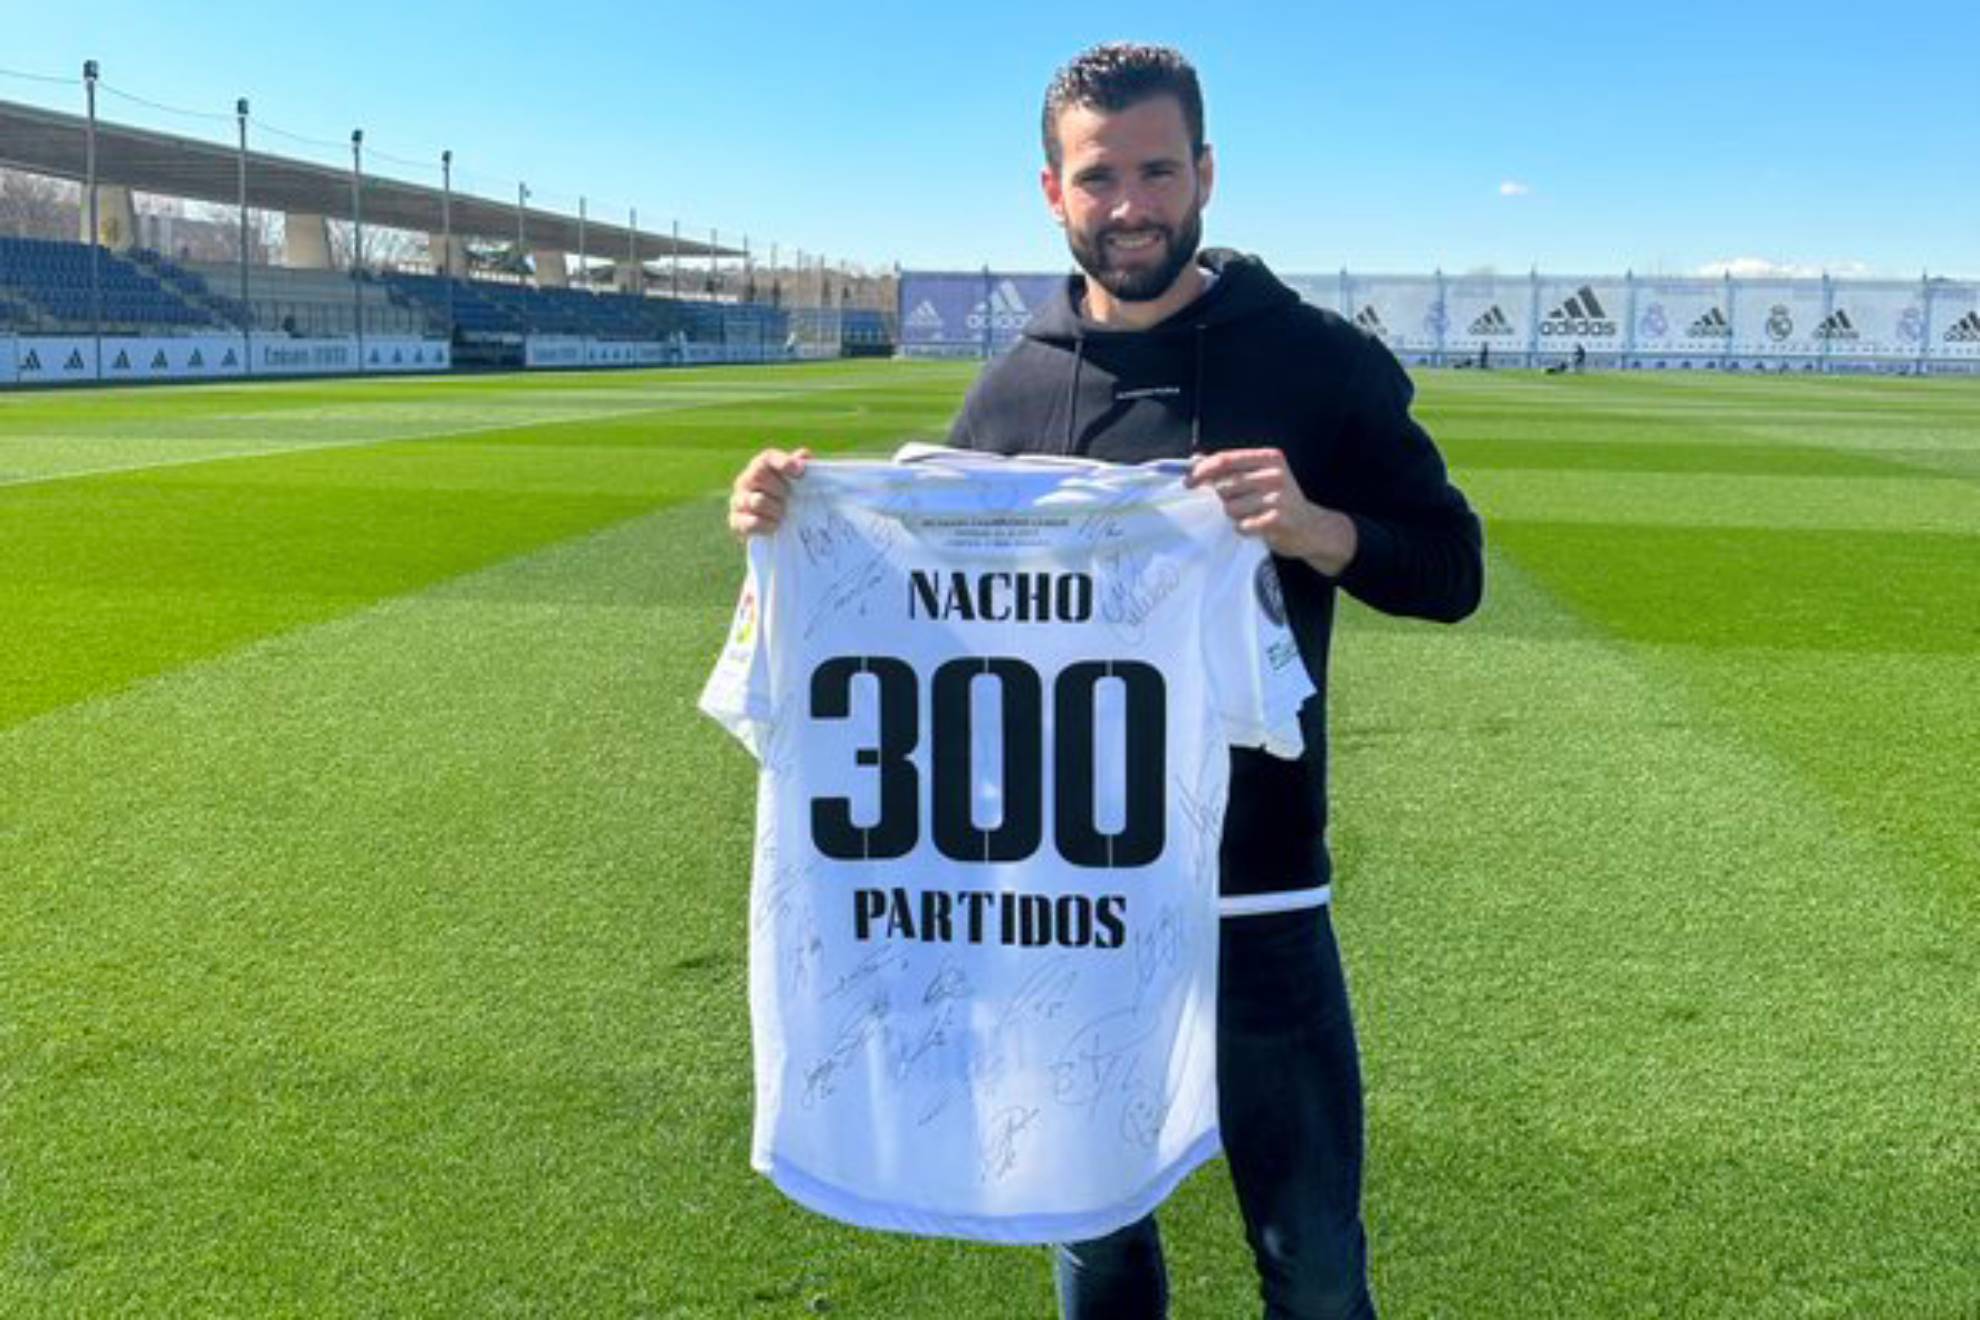 Nacho posa con la camiseta de los 300 partidos